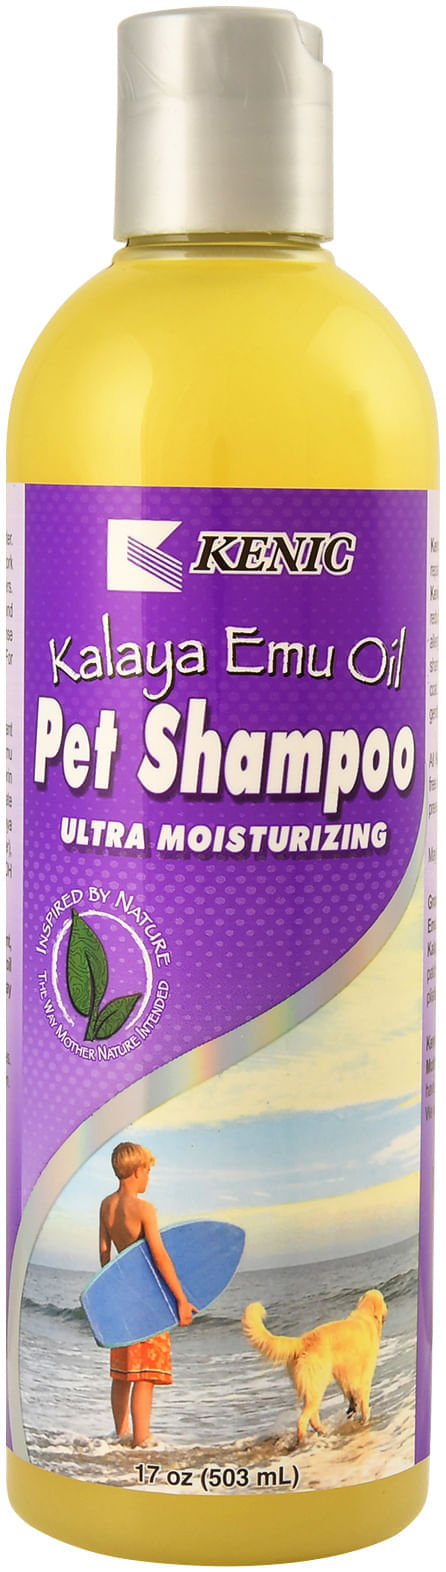 17-oz-Kalaya-Emu-Oil-Pet-Shampoo